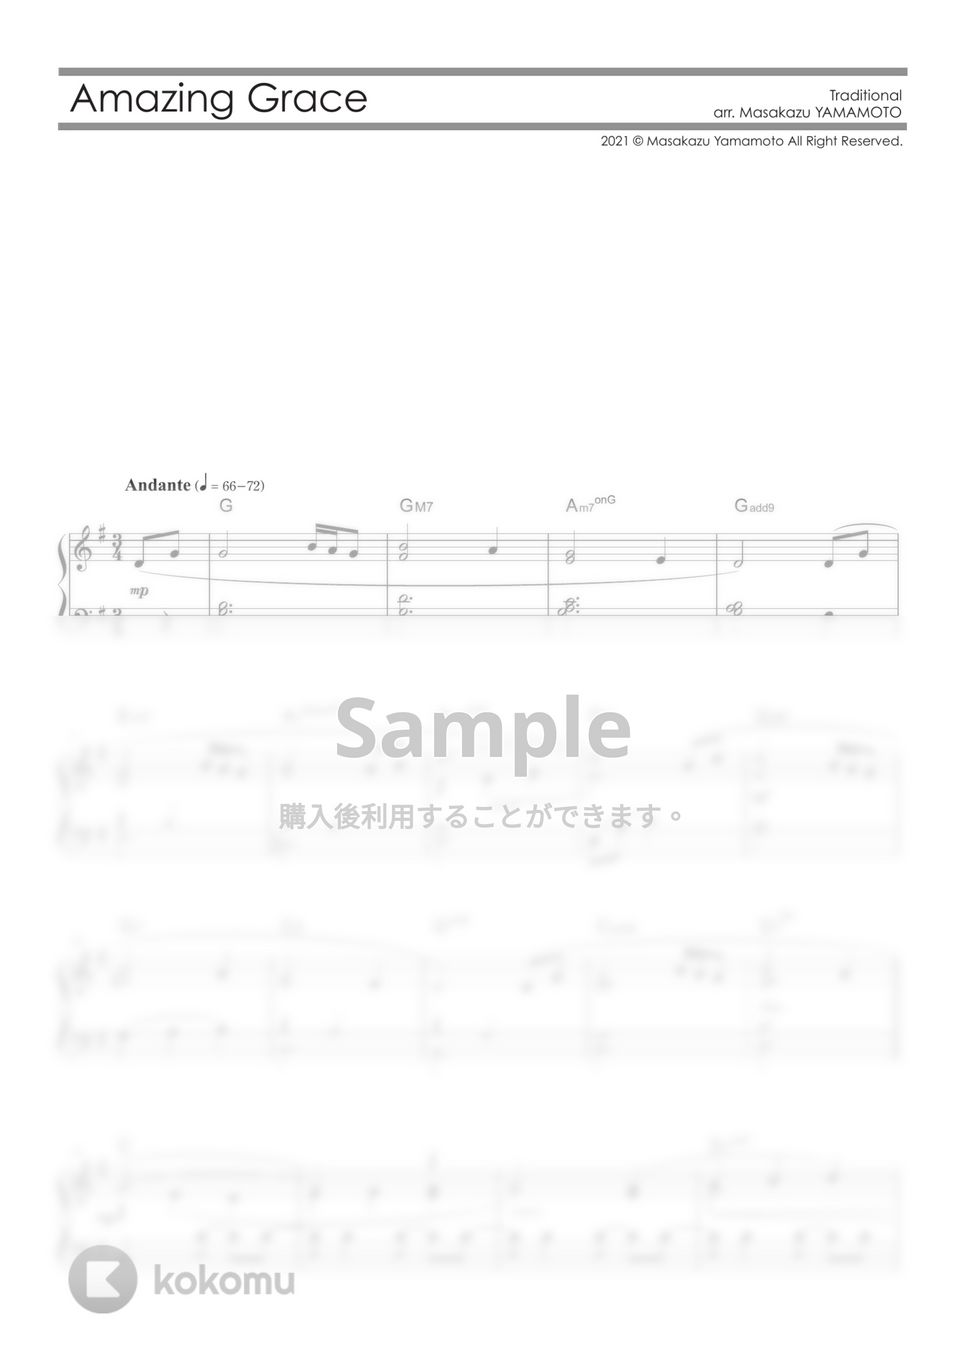 讃美歌 - アメイジング・グレイス / Amazing Grace (ピアノ初級) by 山本雅一